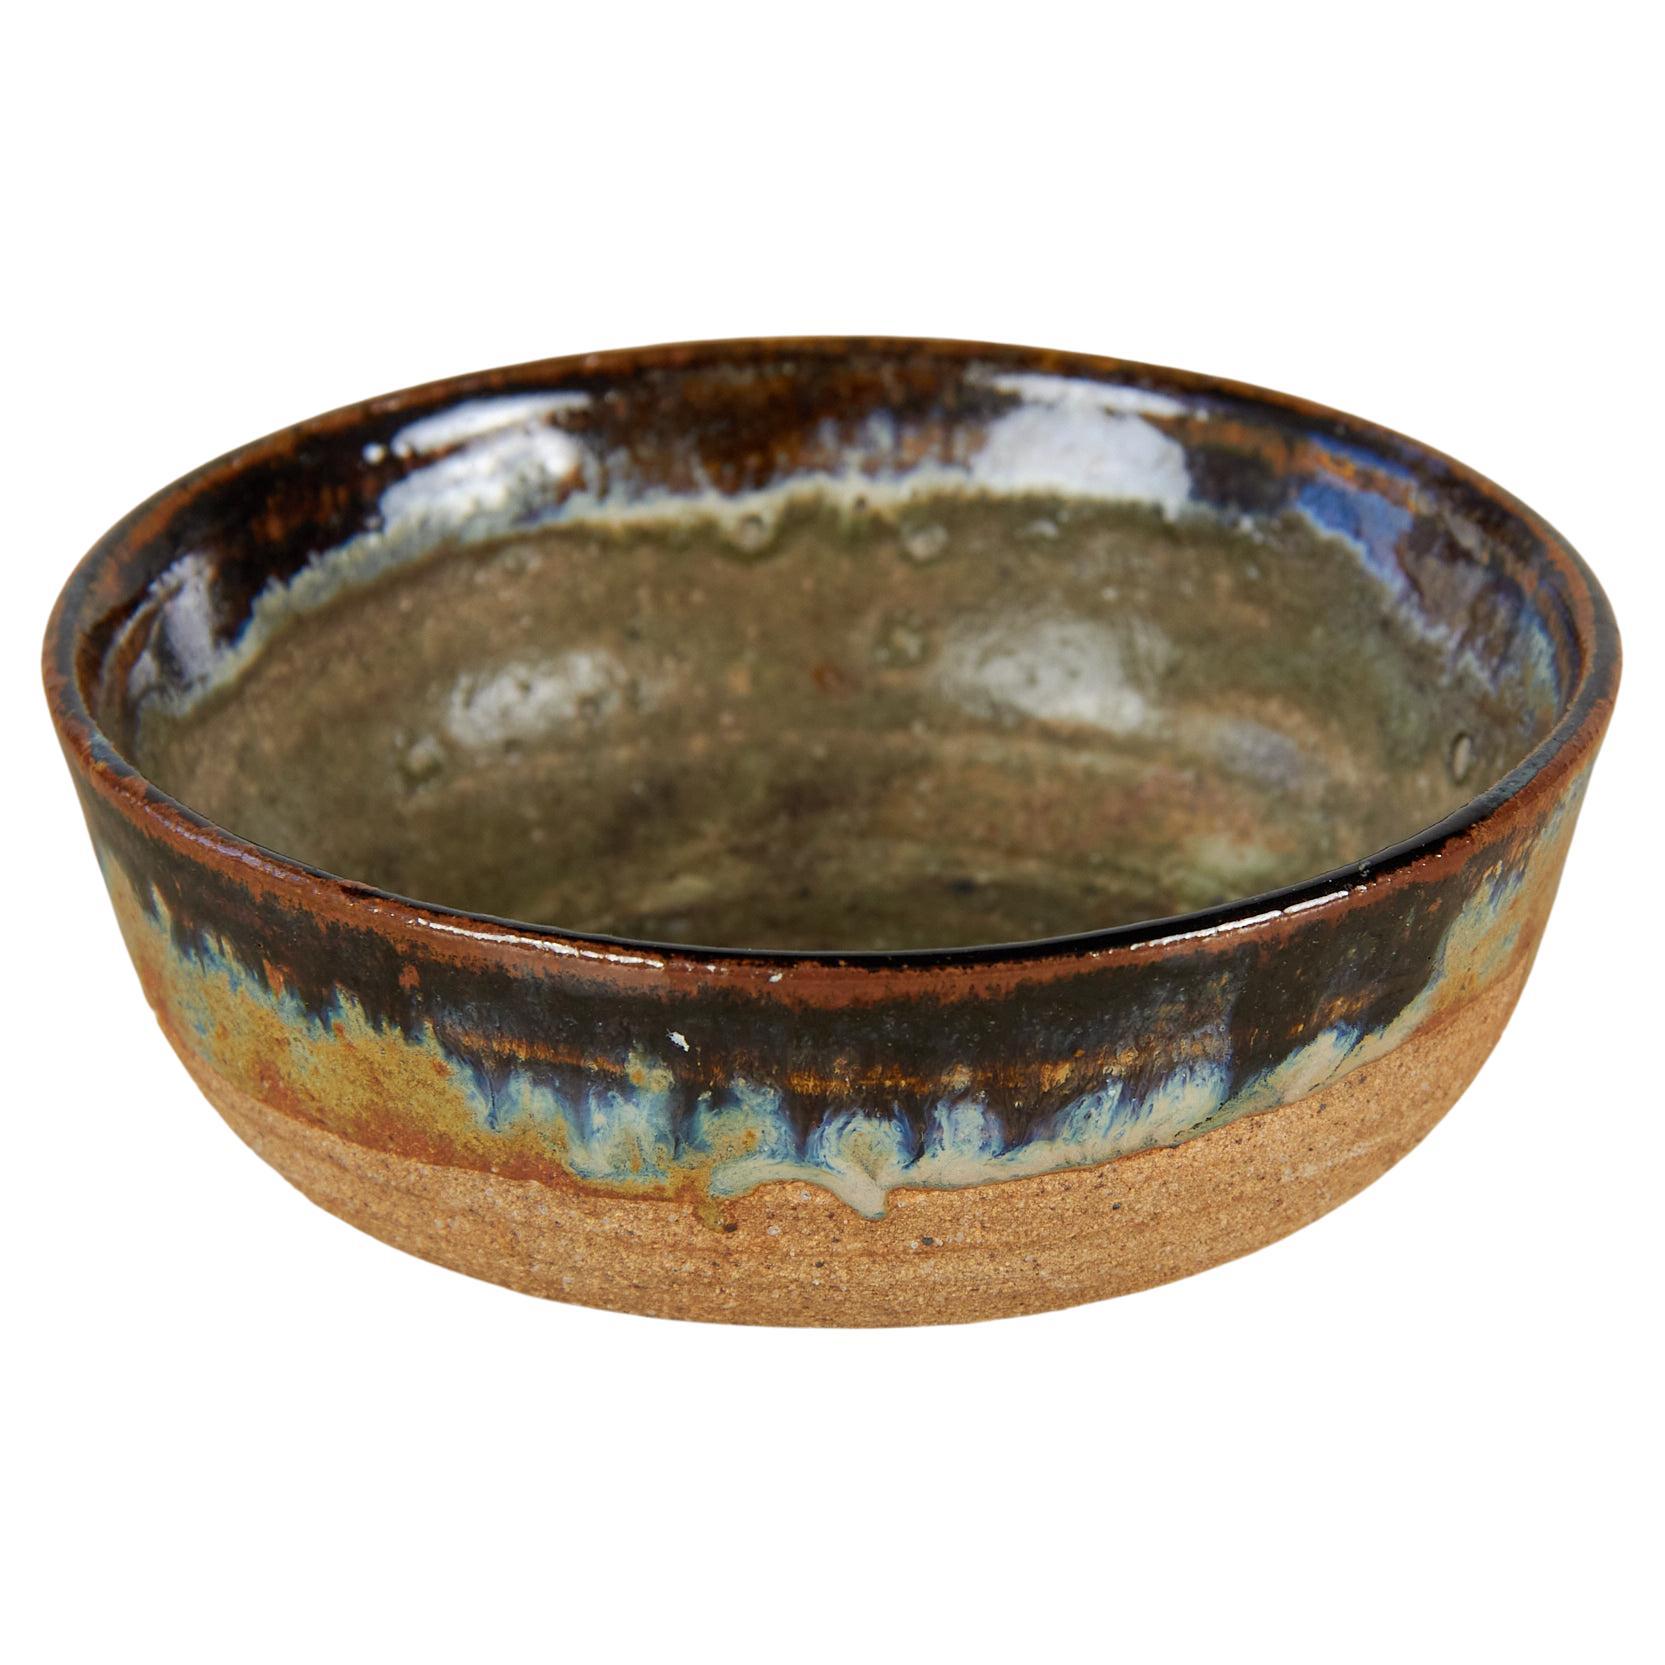 Stoneware Studio Ceramic Bowl with Glaze